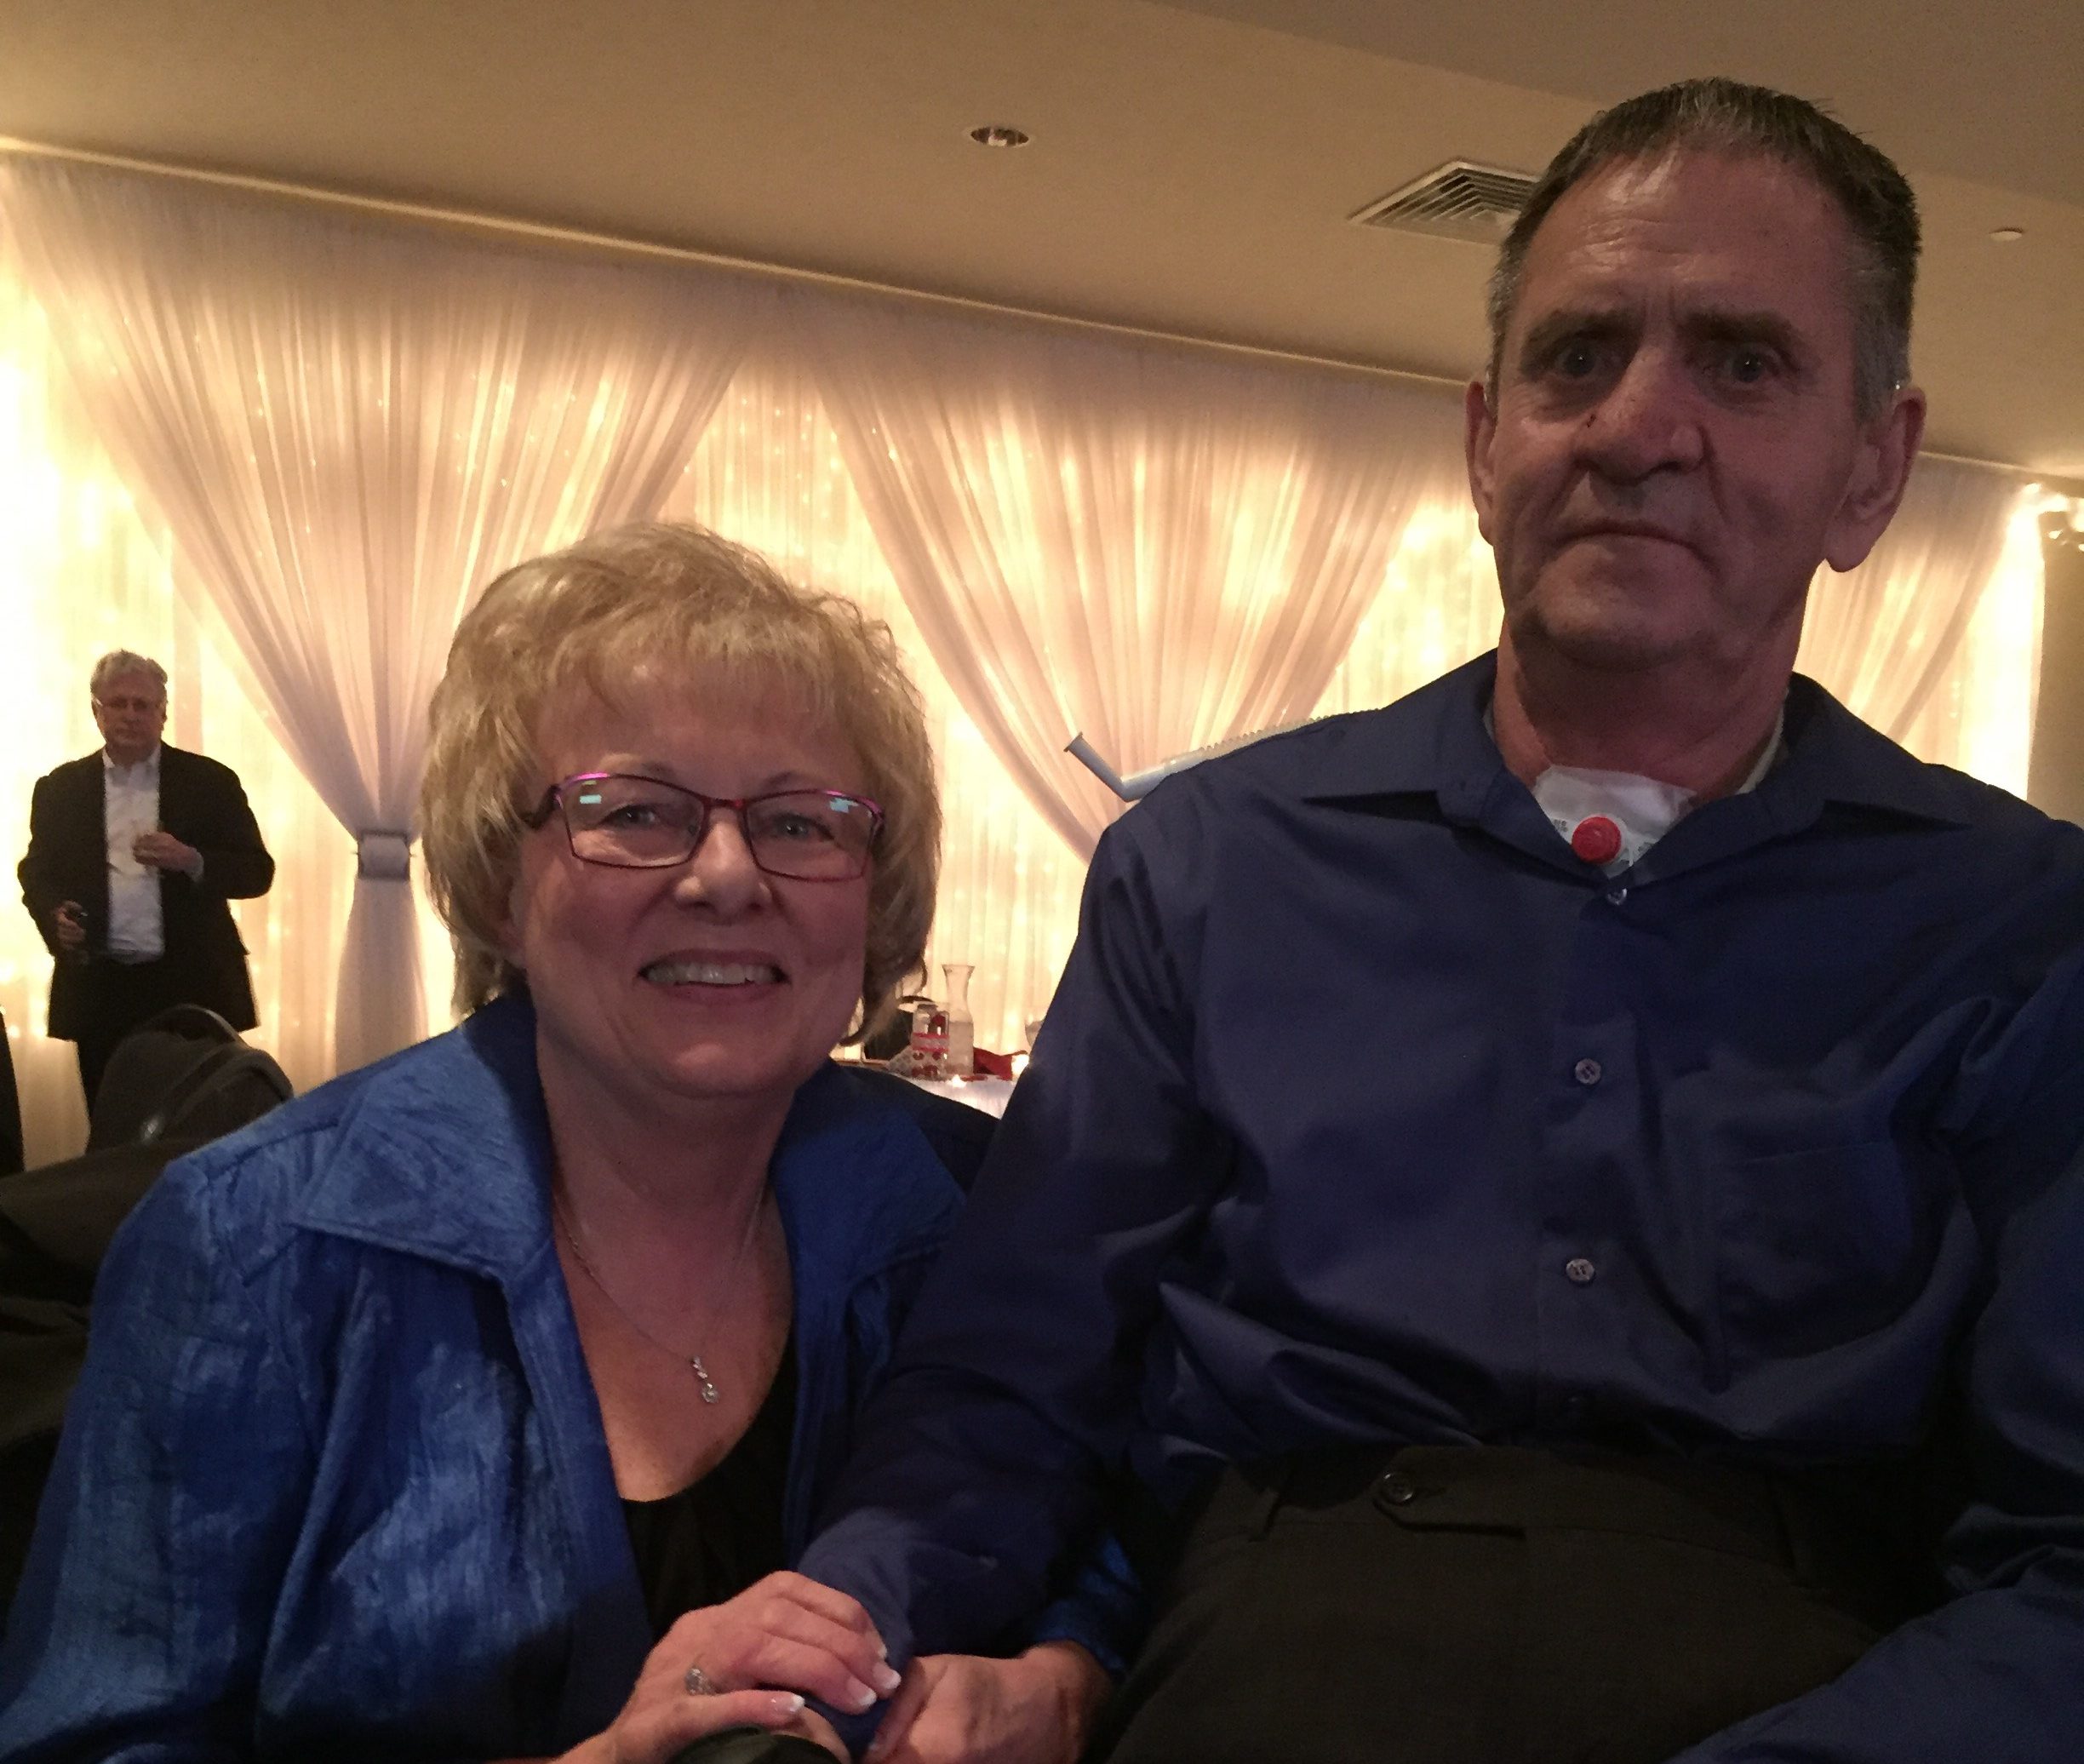 Linda Mickalowski and her husband at an event